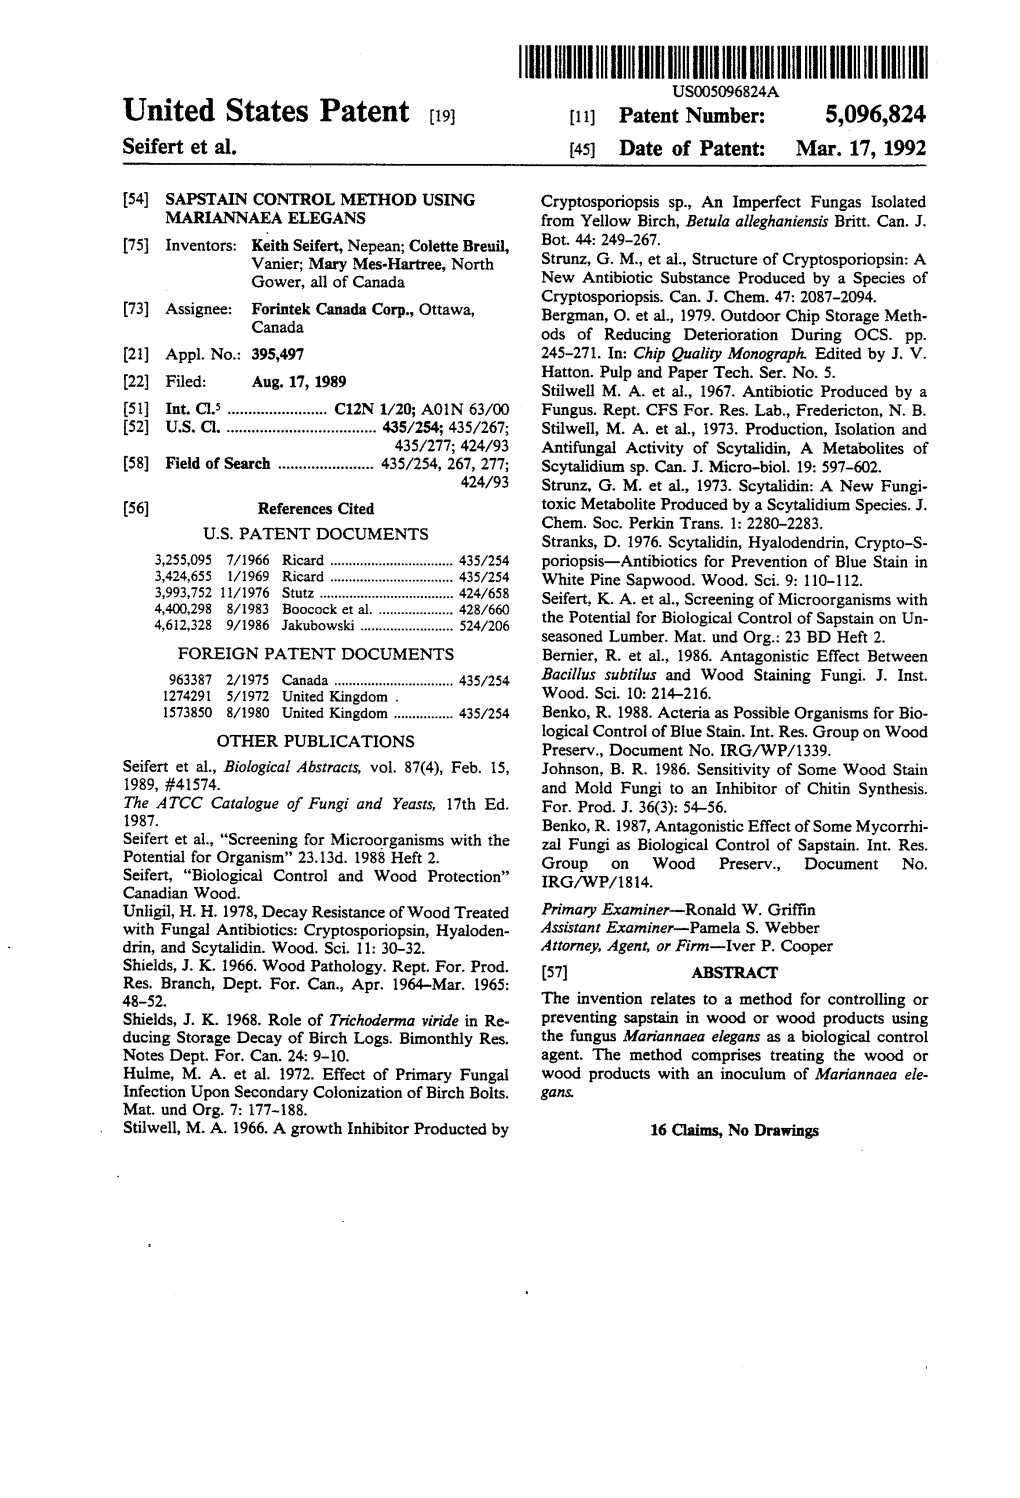 United States Patent (19) 11) Patent Number: 5,096,824 Seifert Et Al